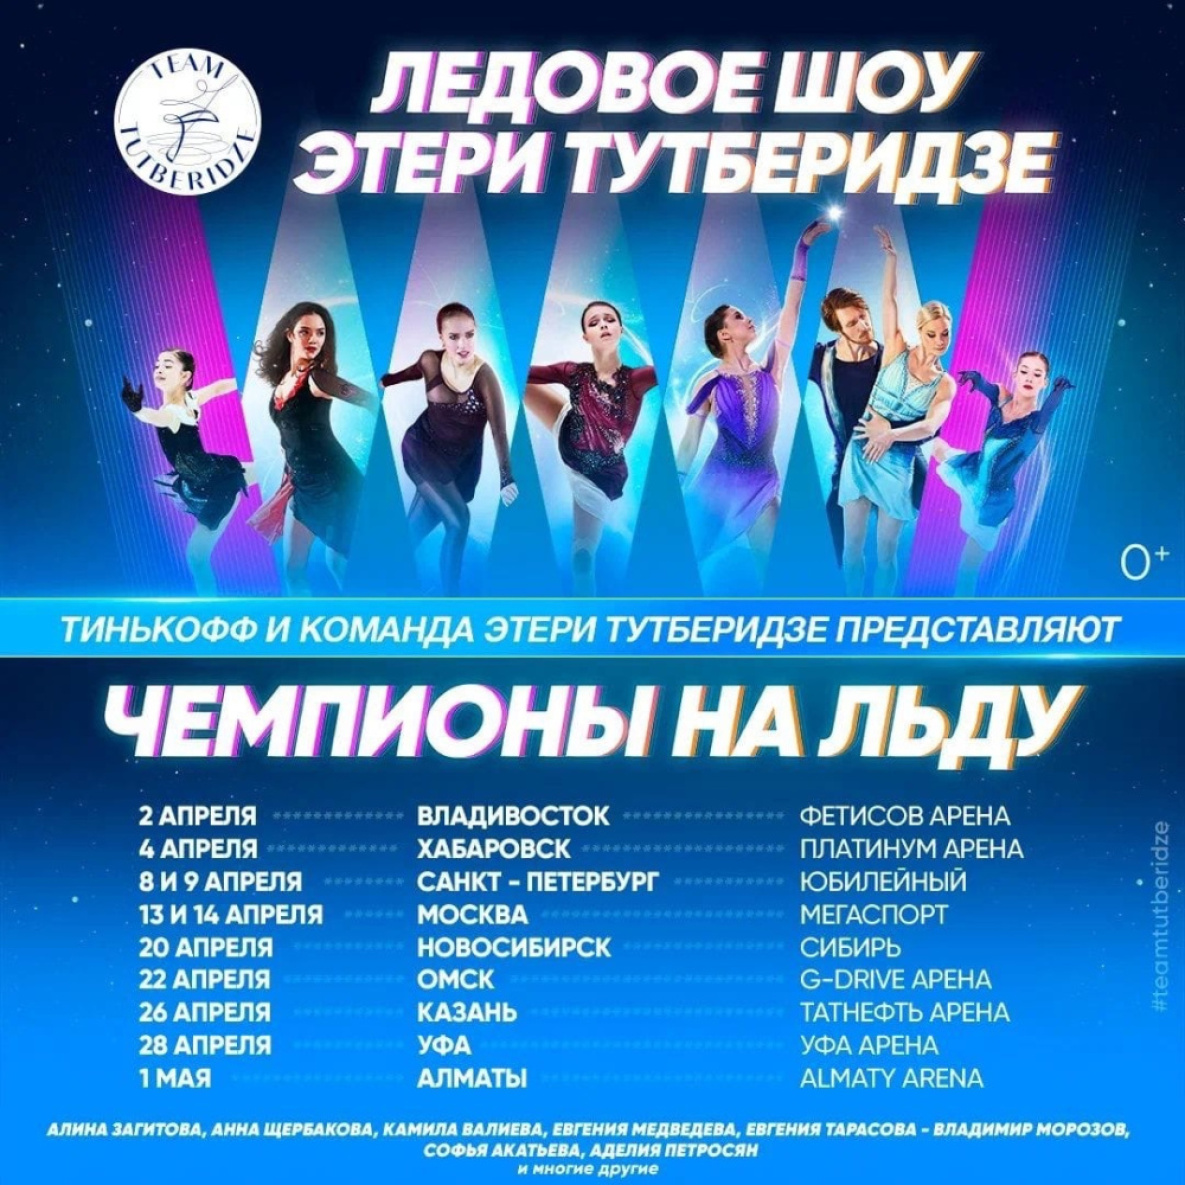 Алина Загитова, Евгения Медведева и Камила Валиева выступят в Хабаровске в ледовом шоу